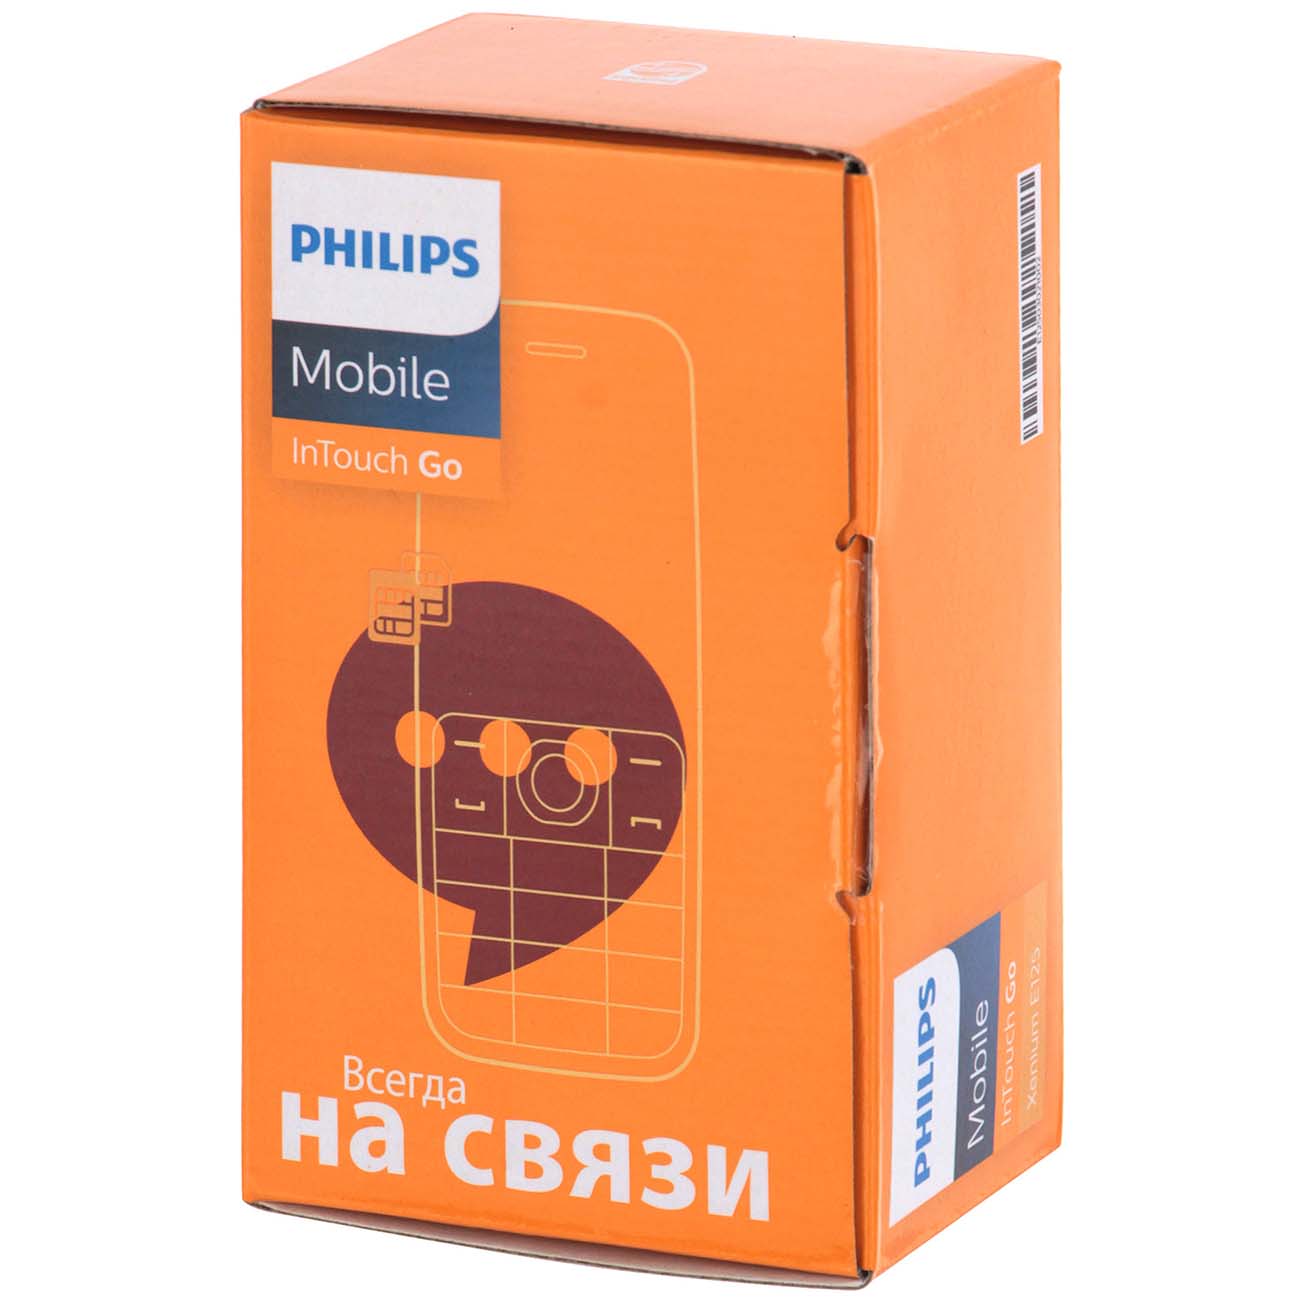 Купить Мобильный телефон Philips Xenium E255 Blue в каталоге интернет  магазина М.Видео по выгодной цене с доставкой, отзывы, фотографии - Москва